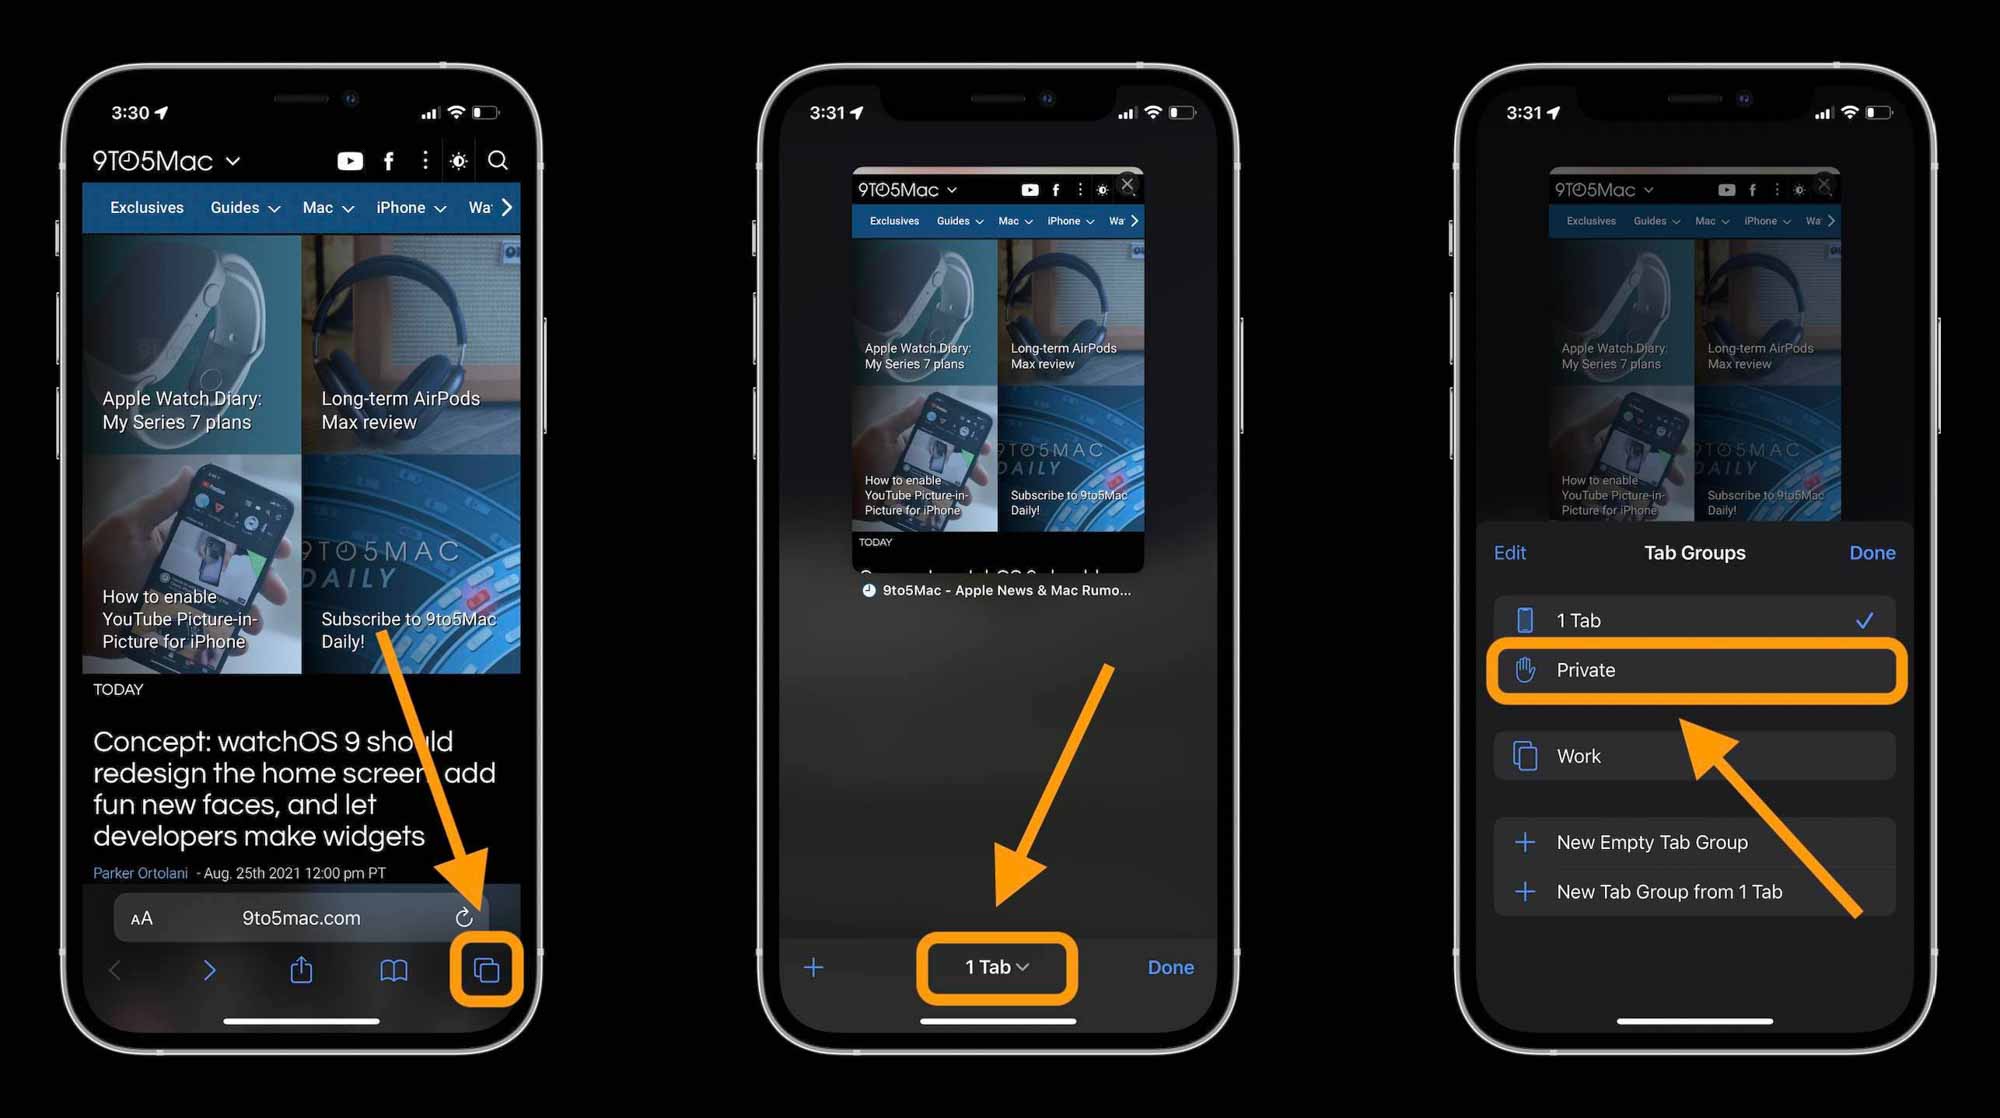 Как использовать частный просмотр iPhone в Safari с iOS 15, пошаговое руководство 1 - нажмите значок с двумя квадратами, выберите кнопку «X-tab», нажмите «Частный»